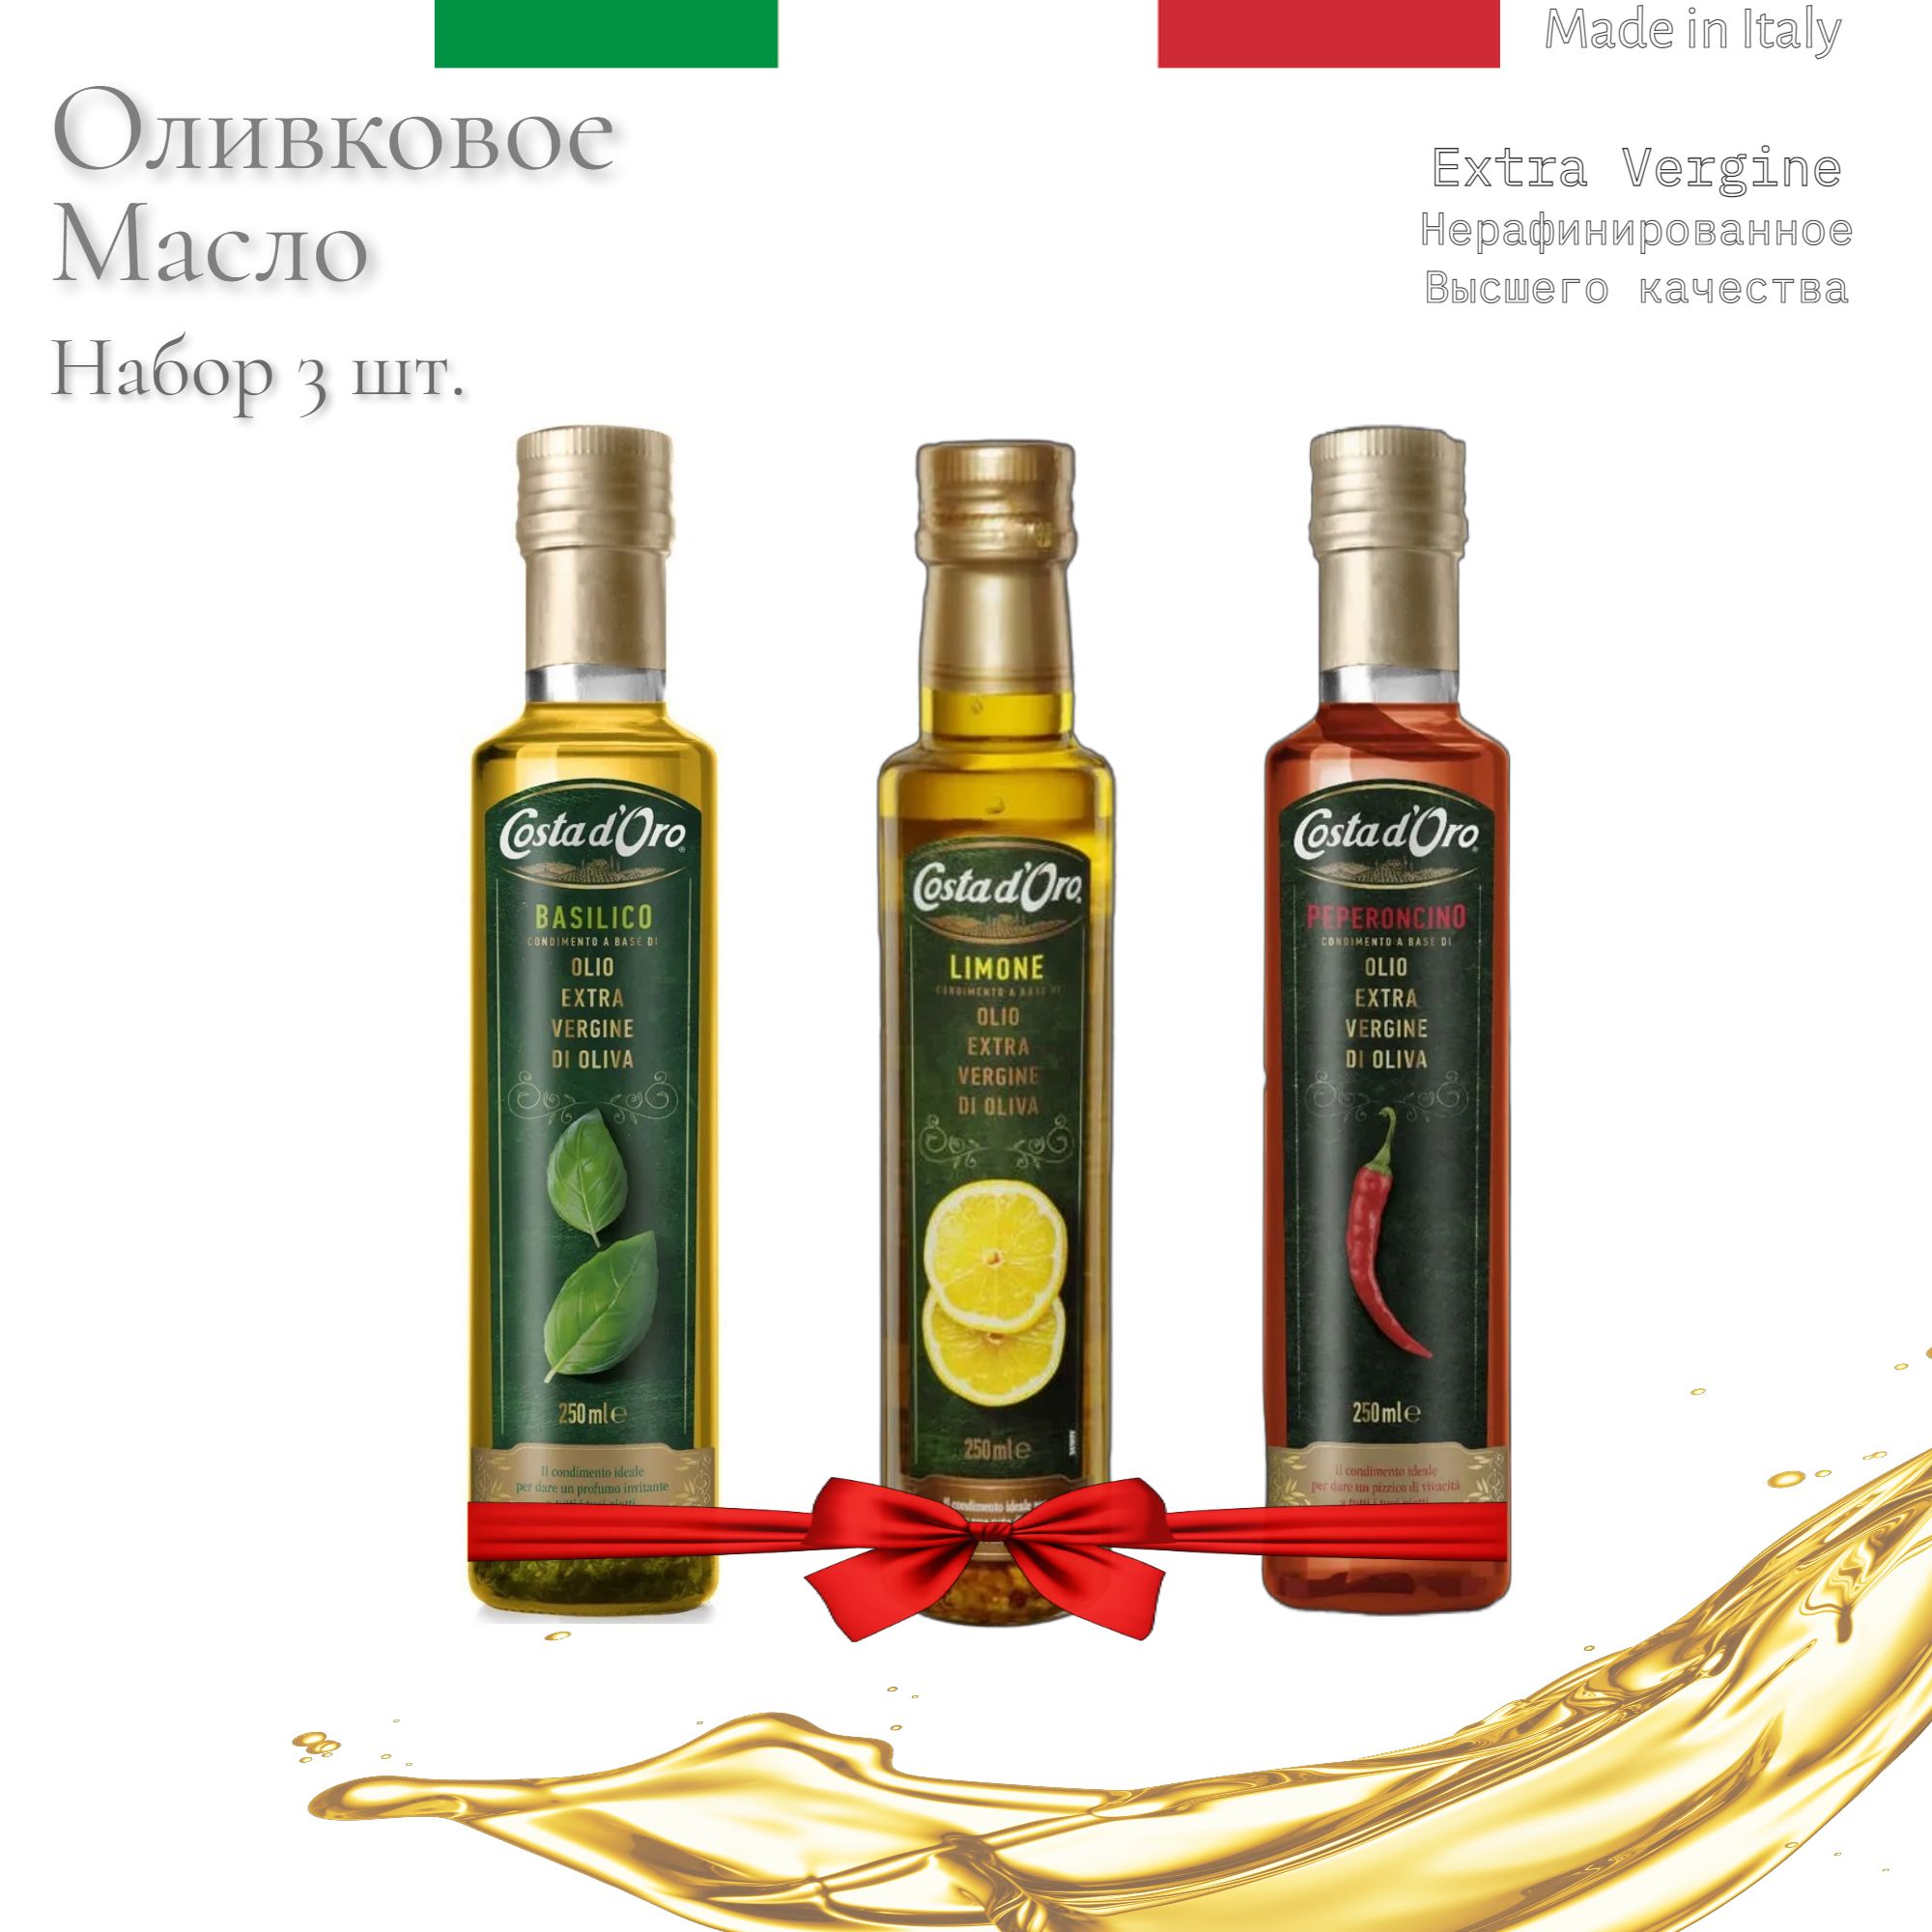 Оливковое costa d oro. Итальянское растительное масло. Итальянское оливковое масло. Масло оливковое Коста доро с базиликом. Оливковое масло к пицце рецепт.